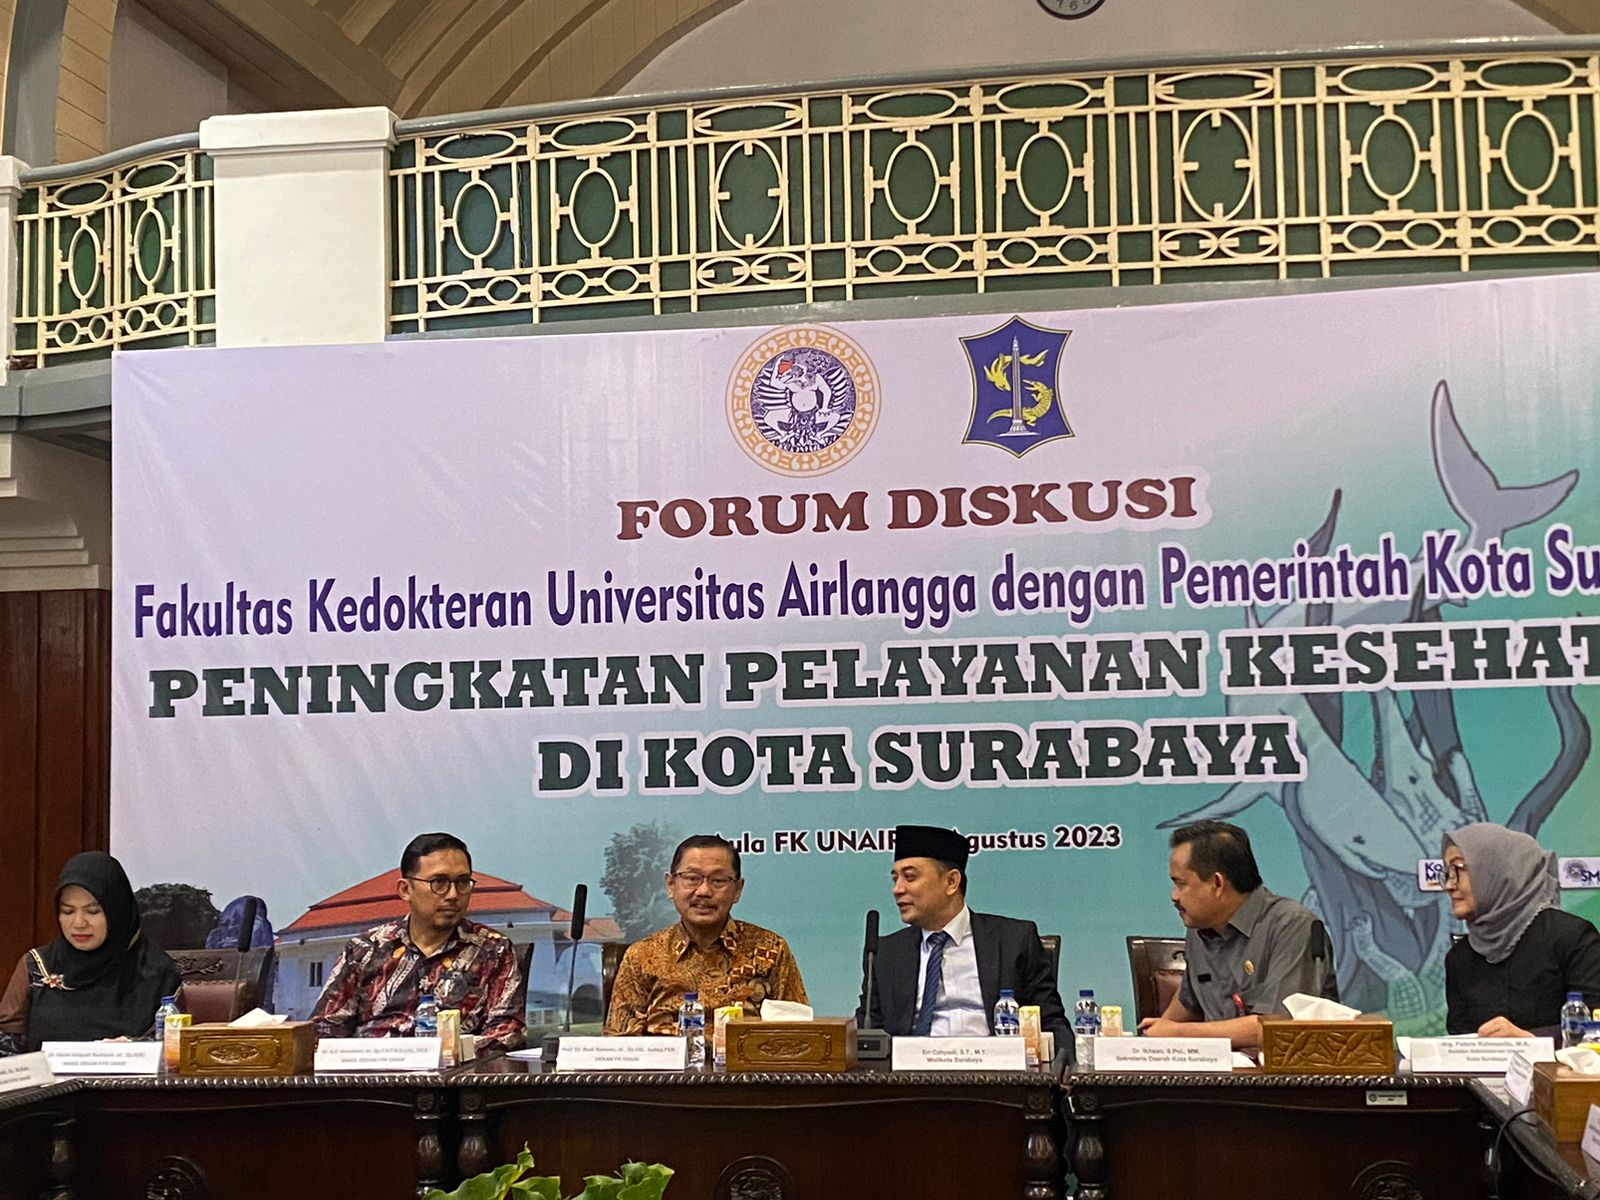 Eri Cahyadi Wali Kota Surabaya saat menghadiri forum diskusi peningkatan pelayanan kesehatan di Kota Surabaya, Selasa (8/8/2023). Foto: Meilita suarasurabaya.net